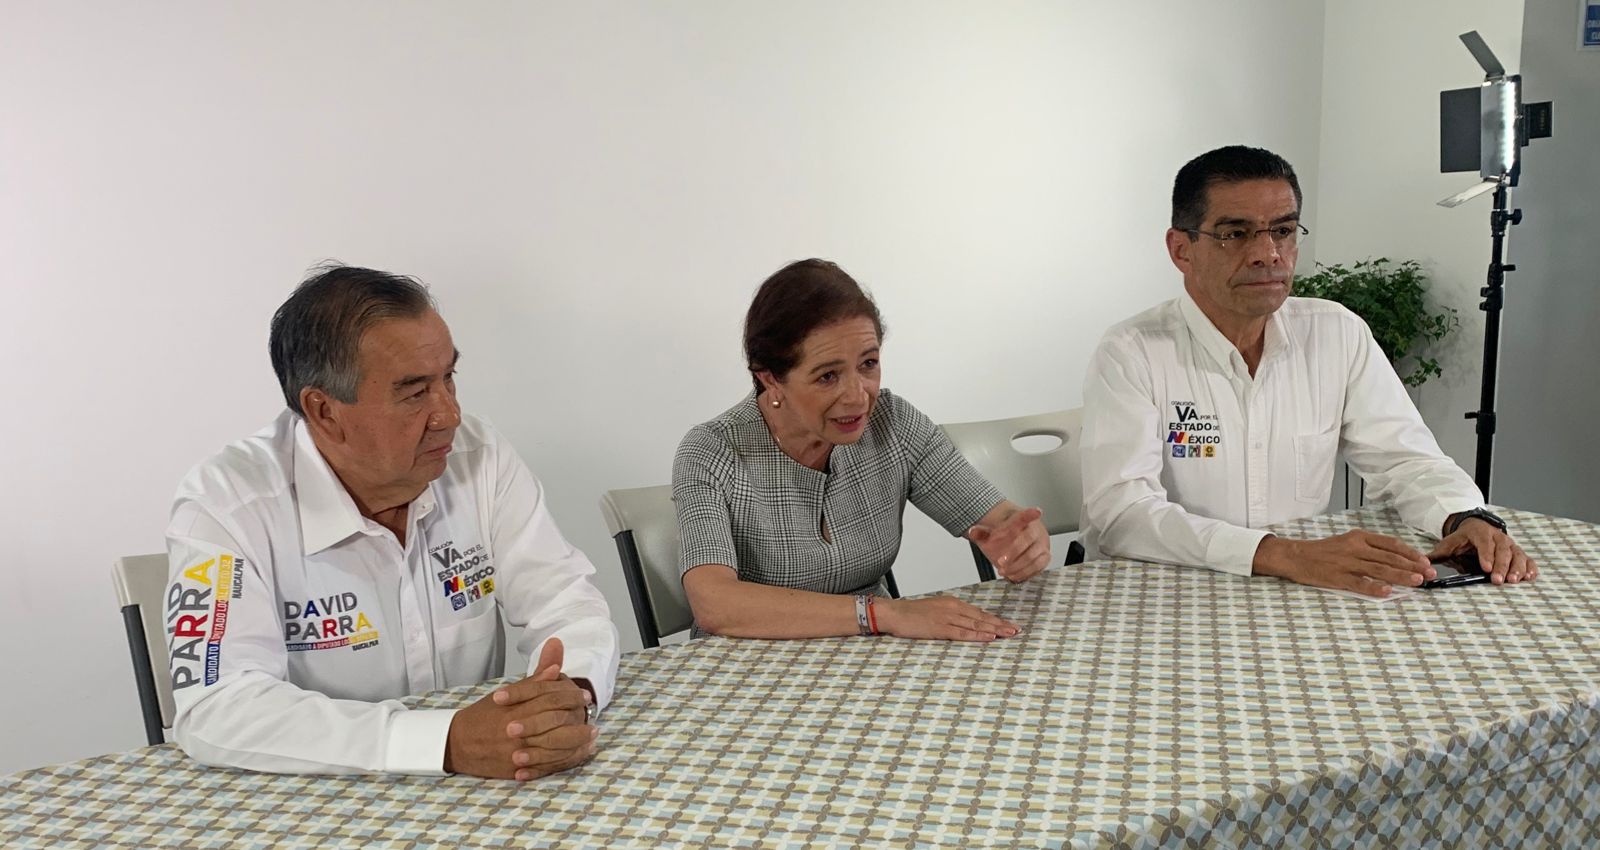 Angélica Moya y los candidatos a diputados David Parra y Enrique Jacob